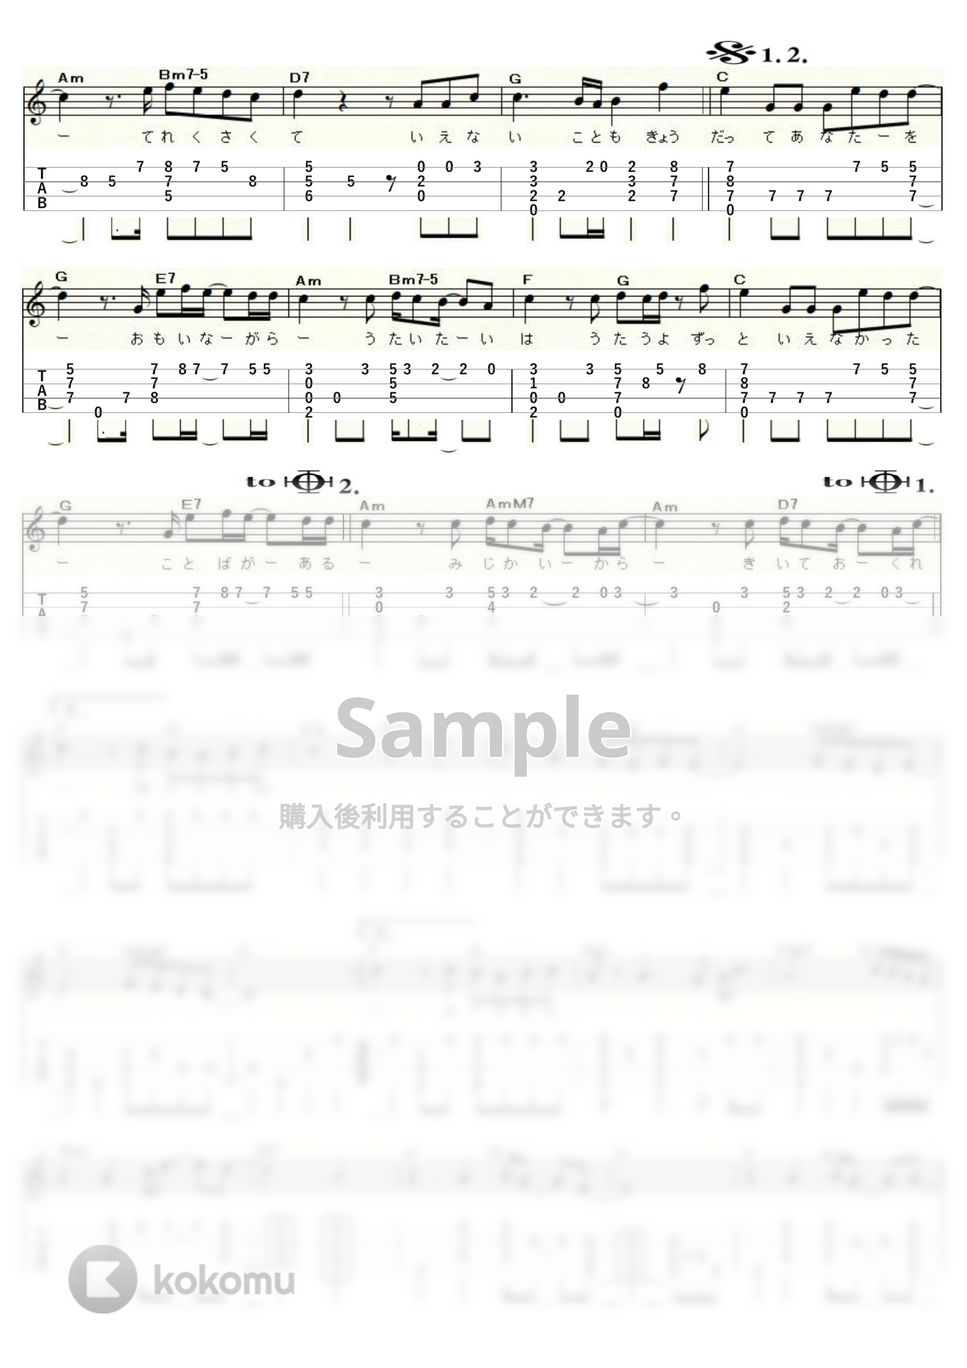 斉藤和義 - 歌うたいのバラッド (ｳｸﾚﾚｿﾛ/Low-G/中級～上級) by ukulelepapa